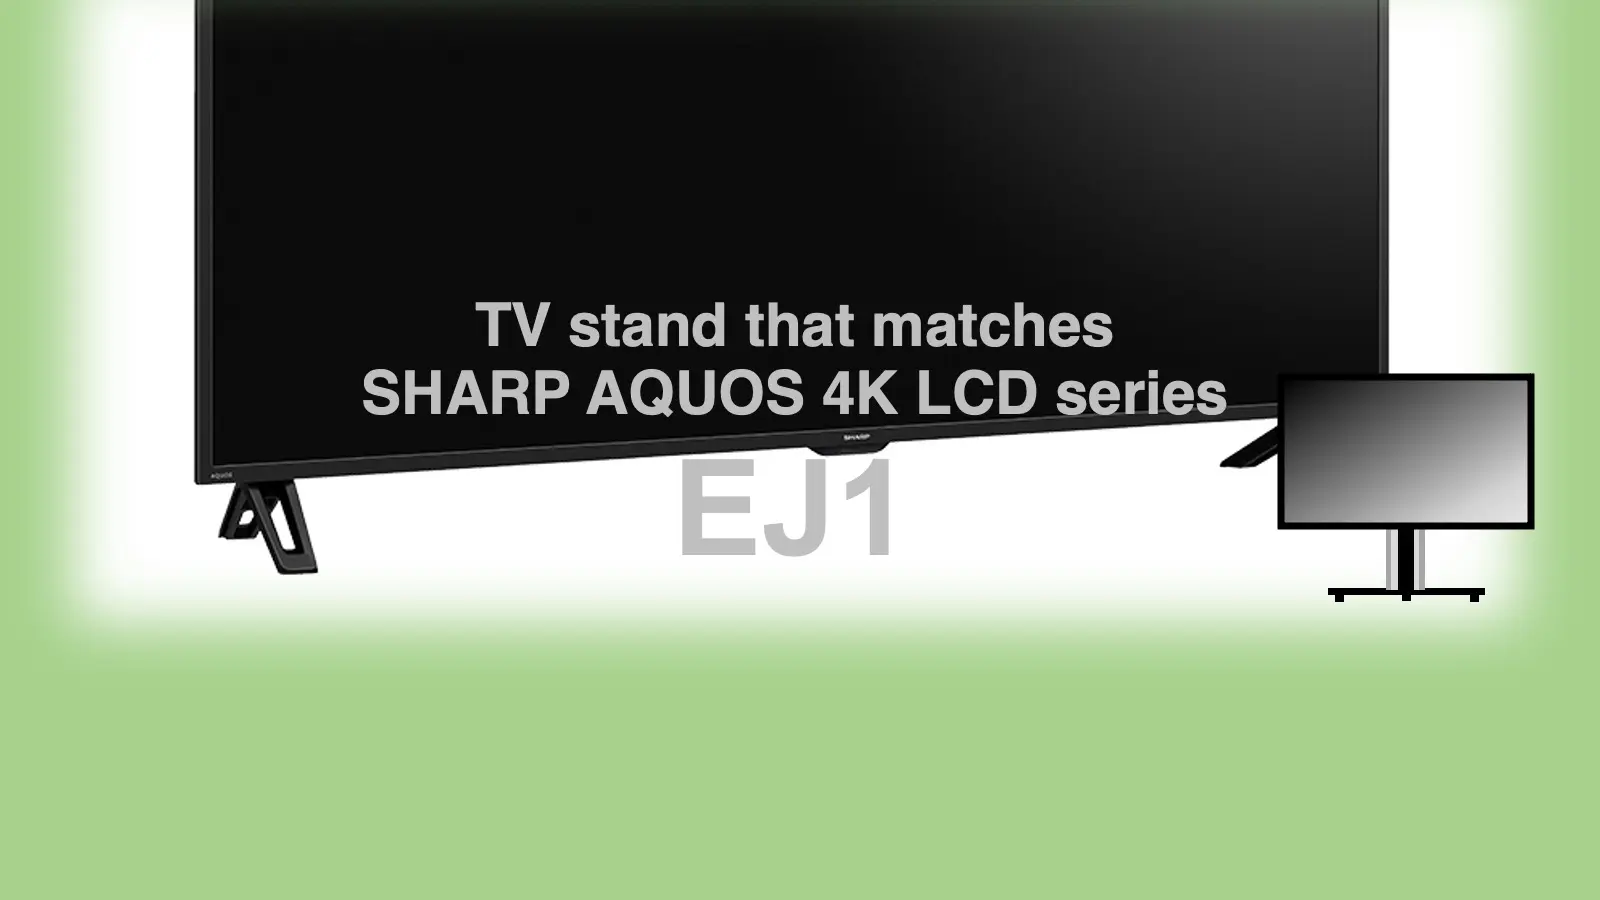 シャープ4K液晶アクオス EJ1に最適なテレビスタンド紹介記事のアイキャッチャー